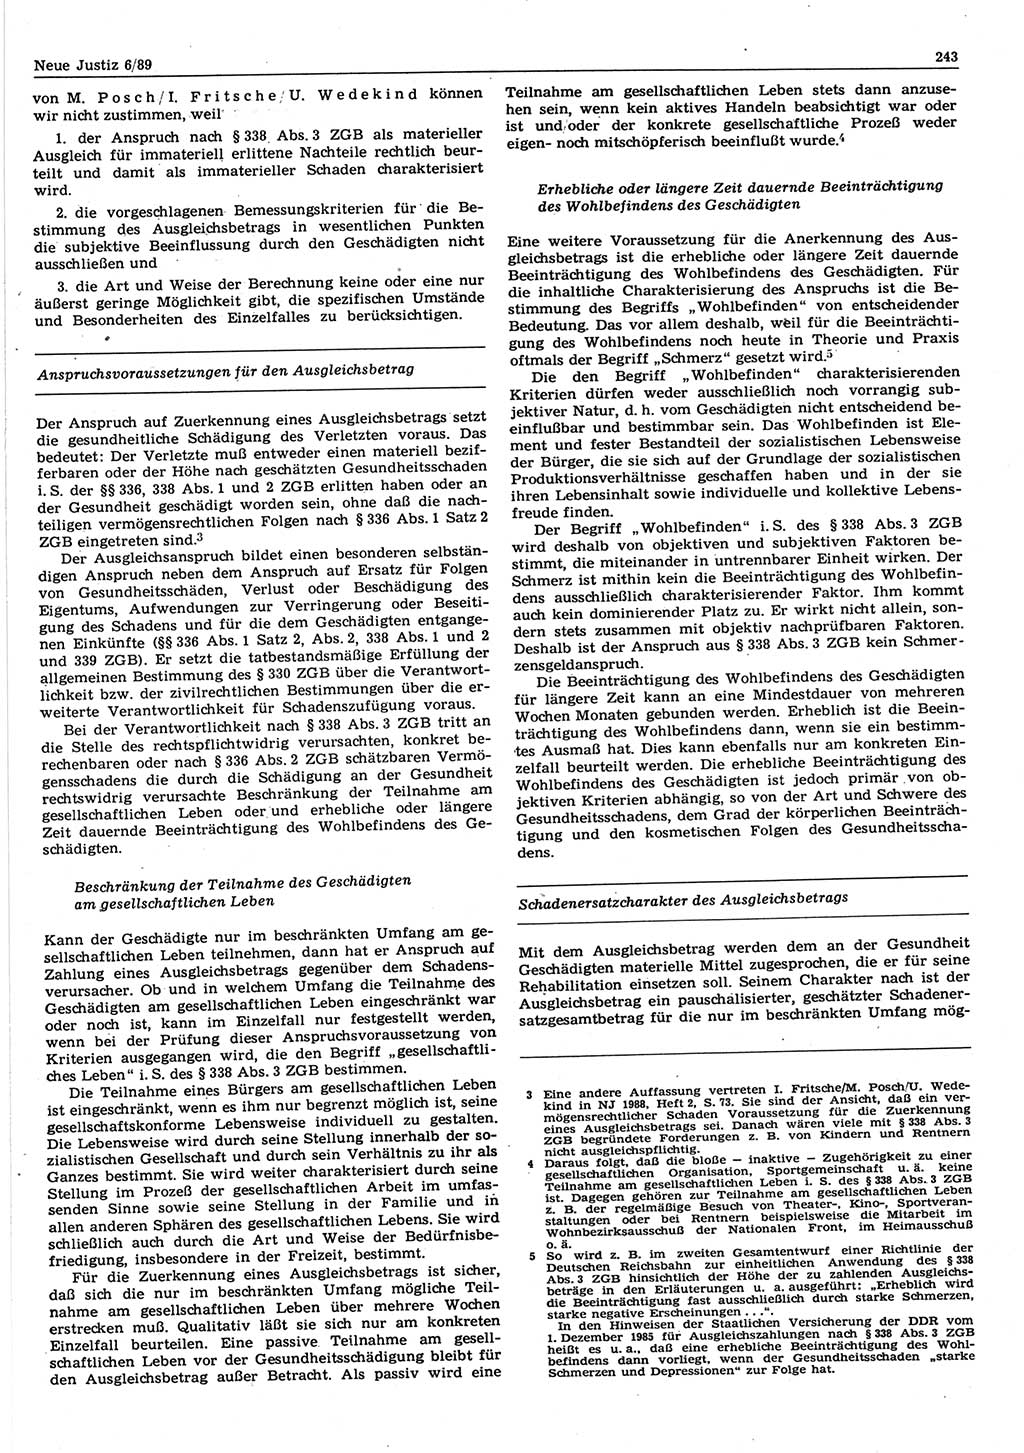 Neue Justiz (NJ), Zeitschrift für sozialistisches Recht und Gesetzlichkeit [Deutsche Demokratische Republik (DDR)], 43. Jahrgang 1989, Seite 243 (NJ DDR 1989, S. 243)